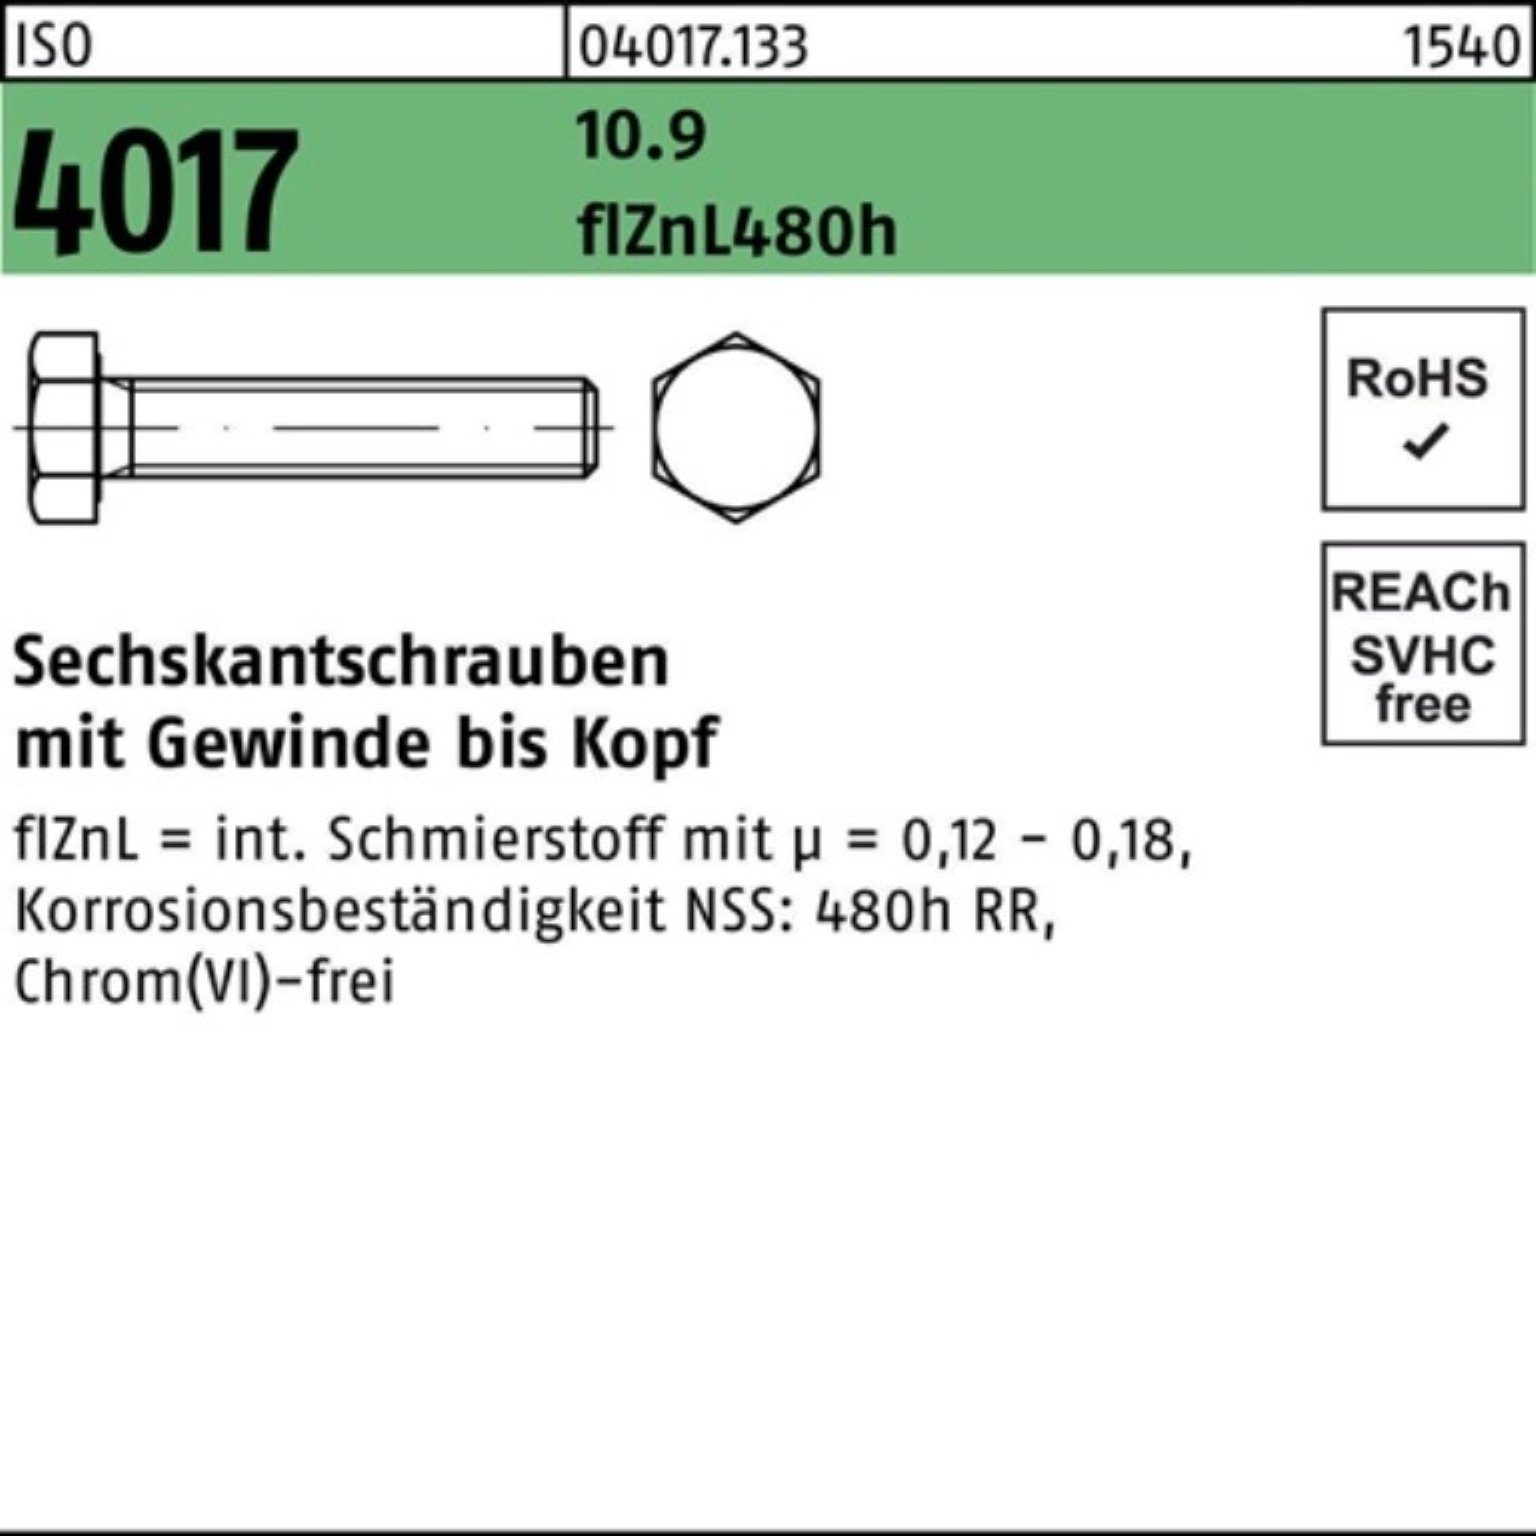 zinklamellenb. Bufab M8x 16 VG 10.9 4017 ISO 200er Sechskantschraube Pack 20 Sechskantschraube